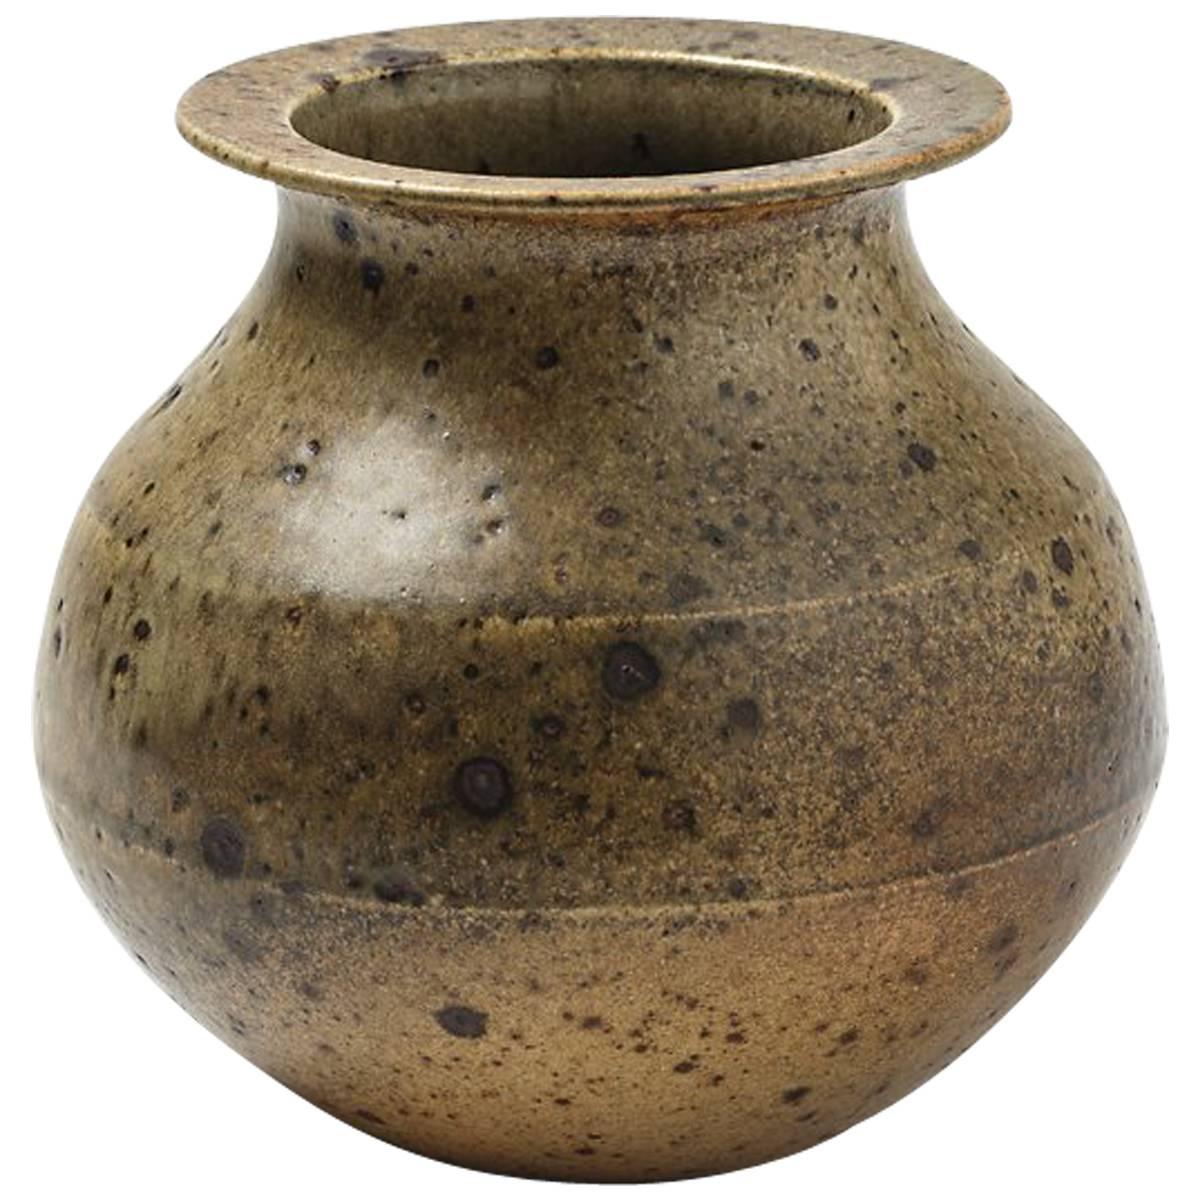 Stoneware Vase by Robert Deblander, circa 1970-1975